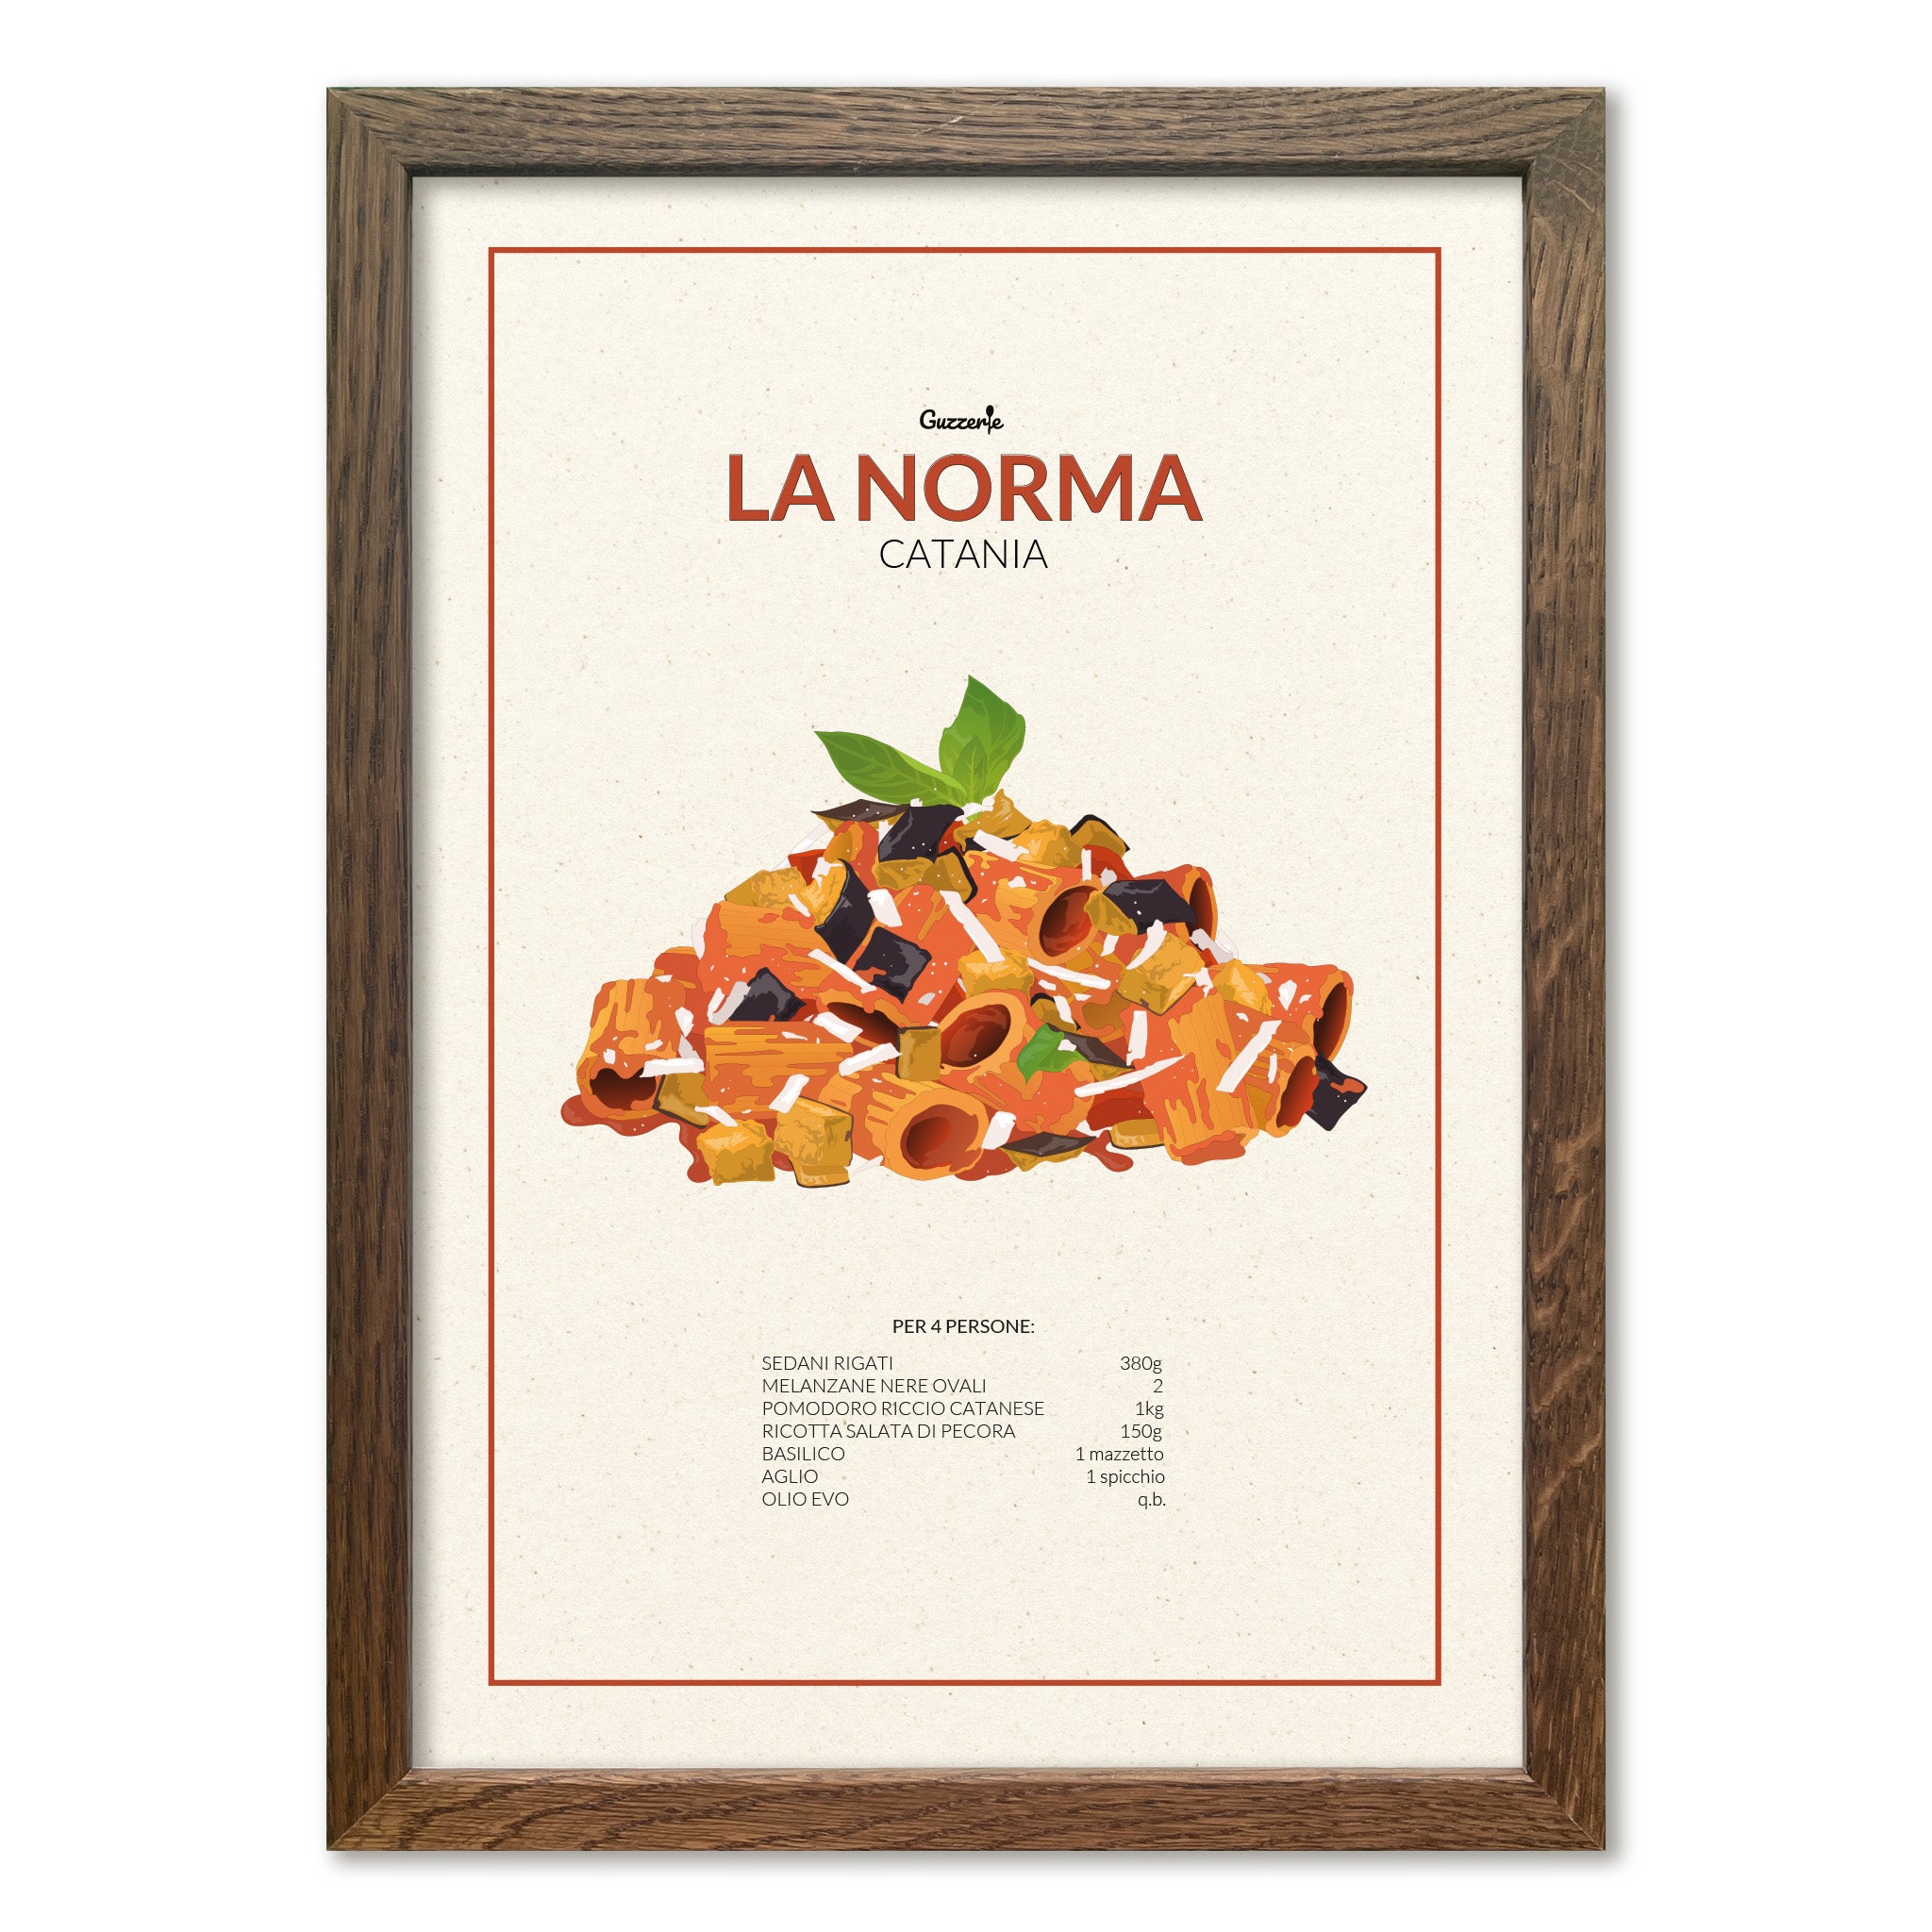 Iconic Poster of Pasta alla Norma | Guzzerie